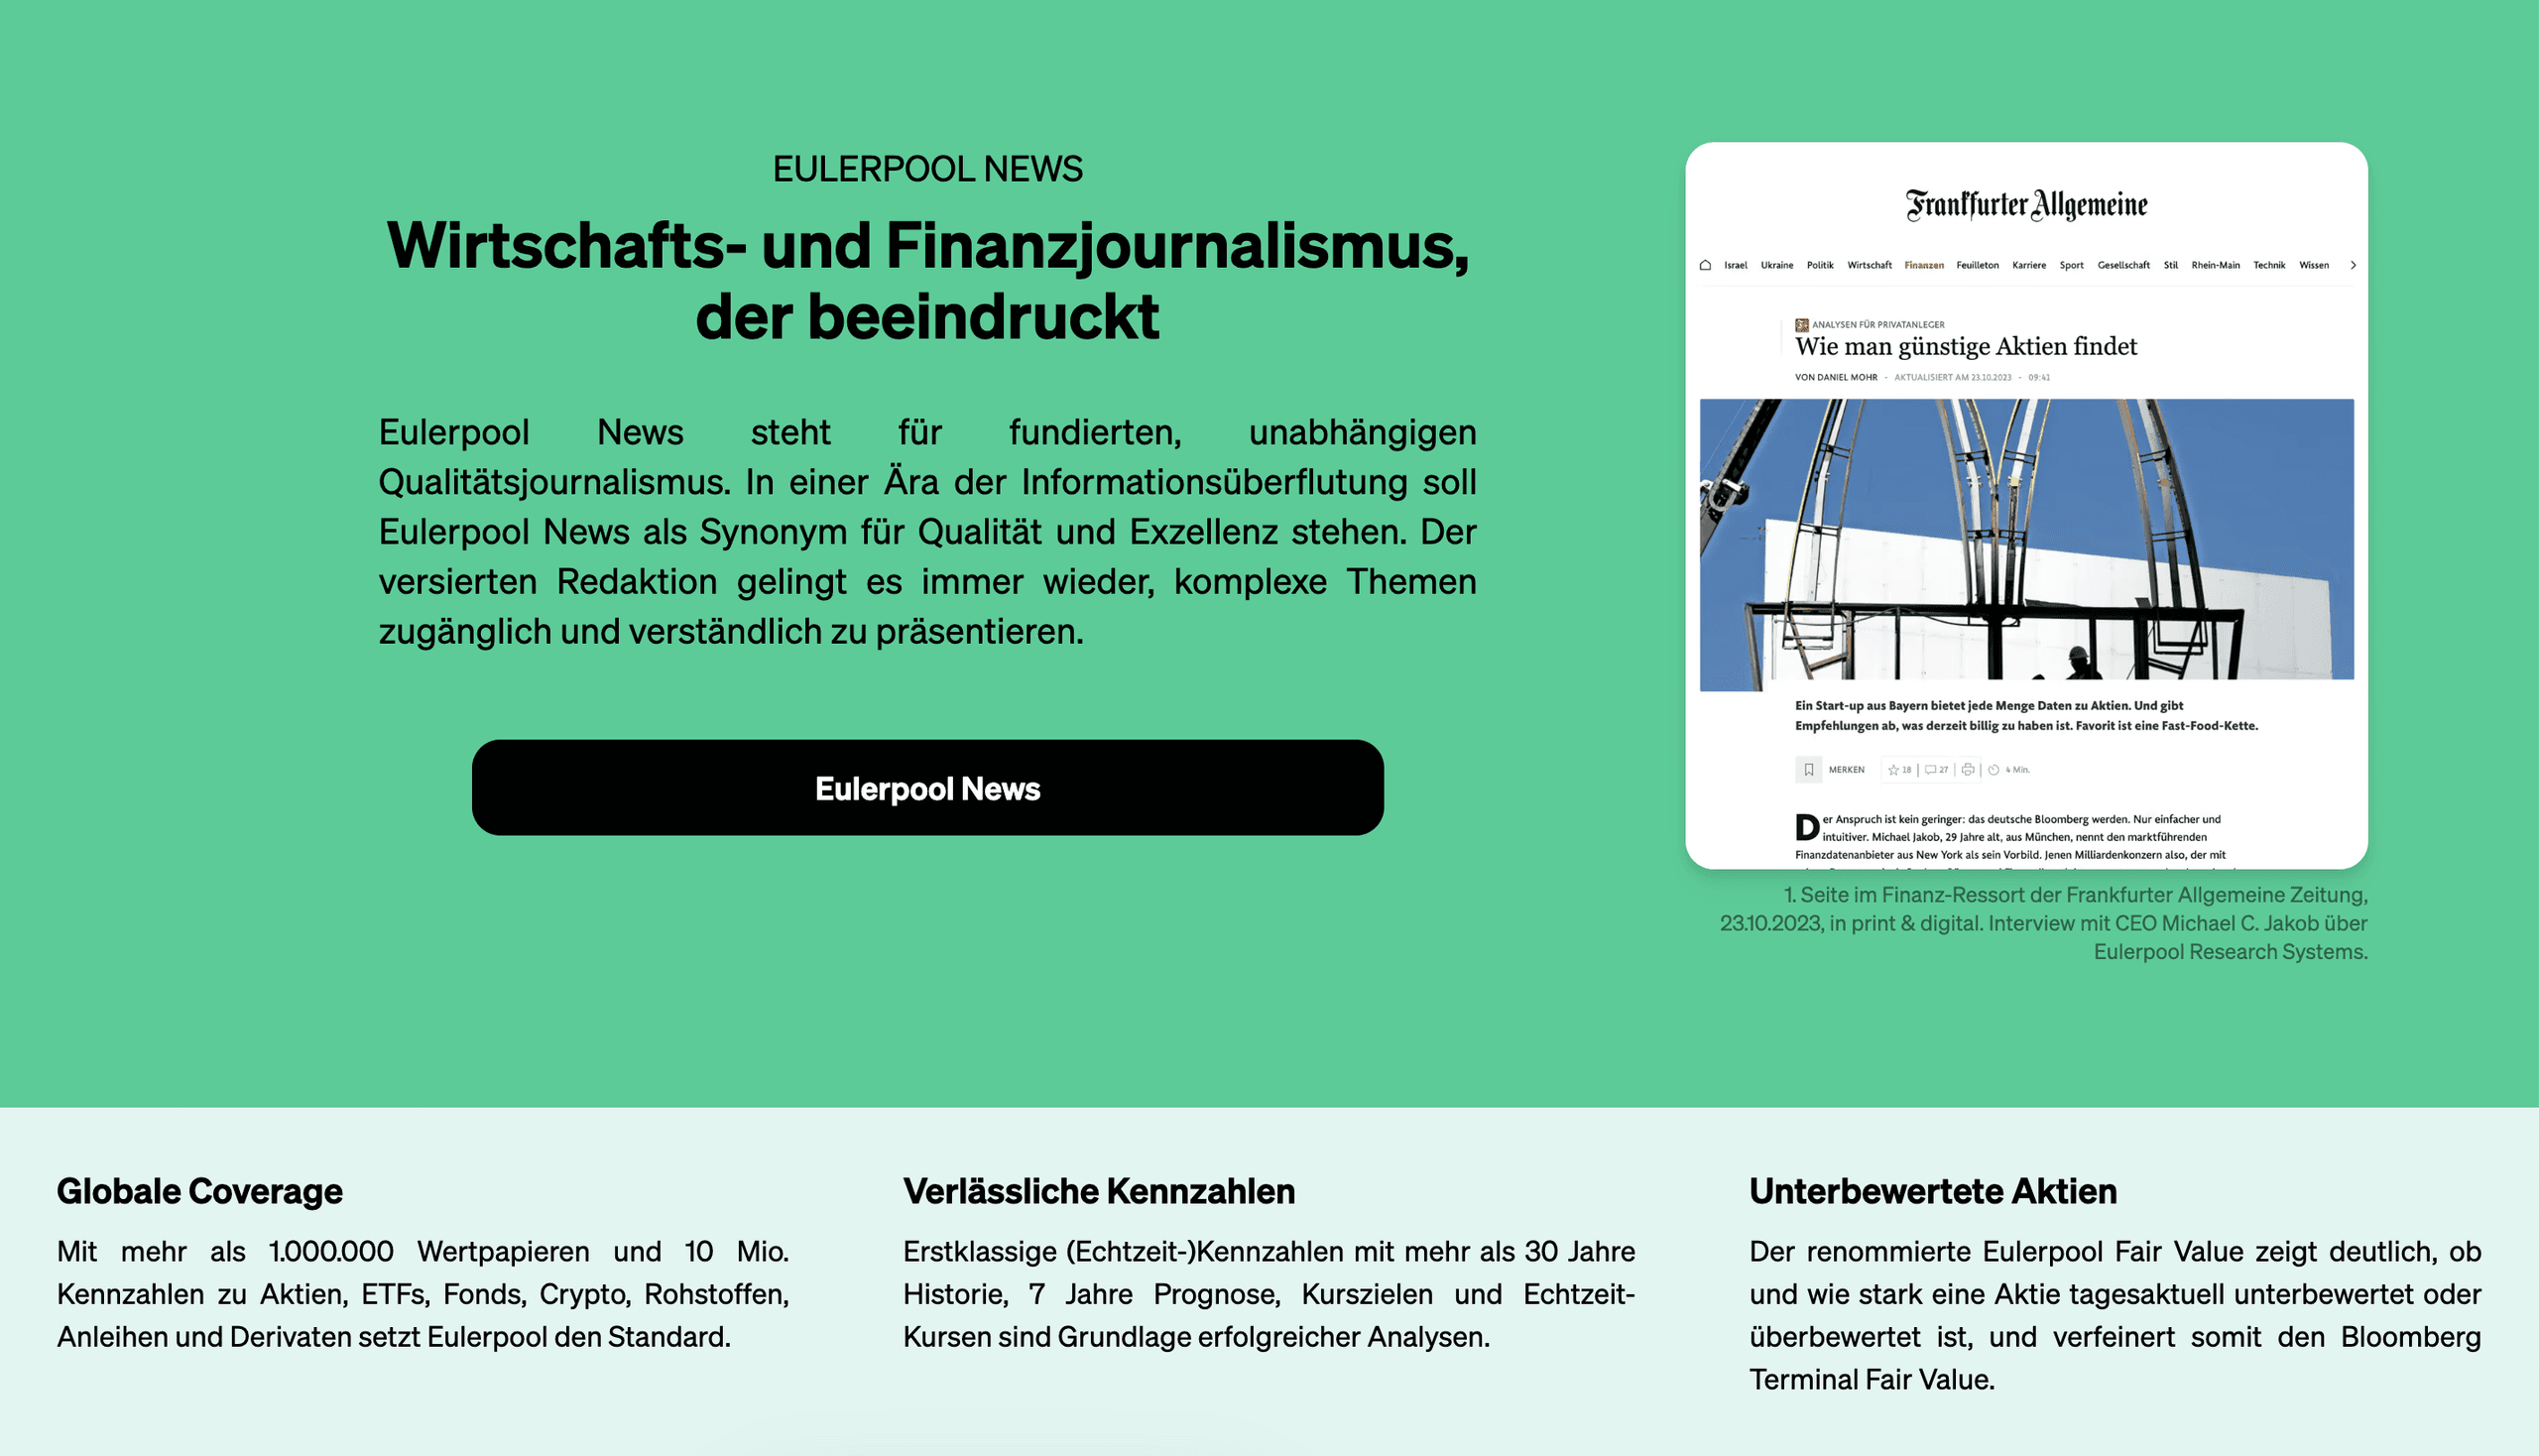 Eulerpool News ist Wirtschafts- und Finanzjournalismus für Deutschland, der beeindruckt.